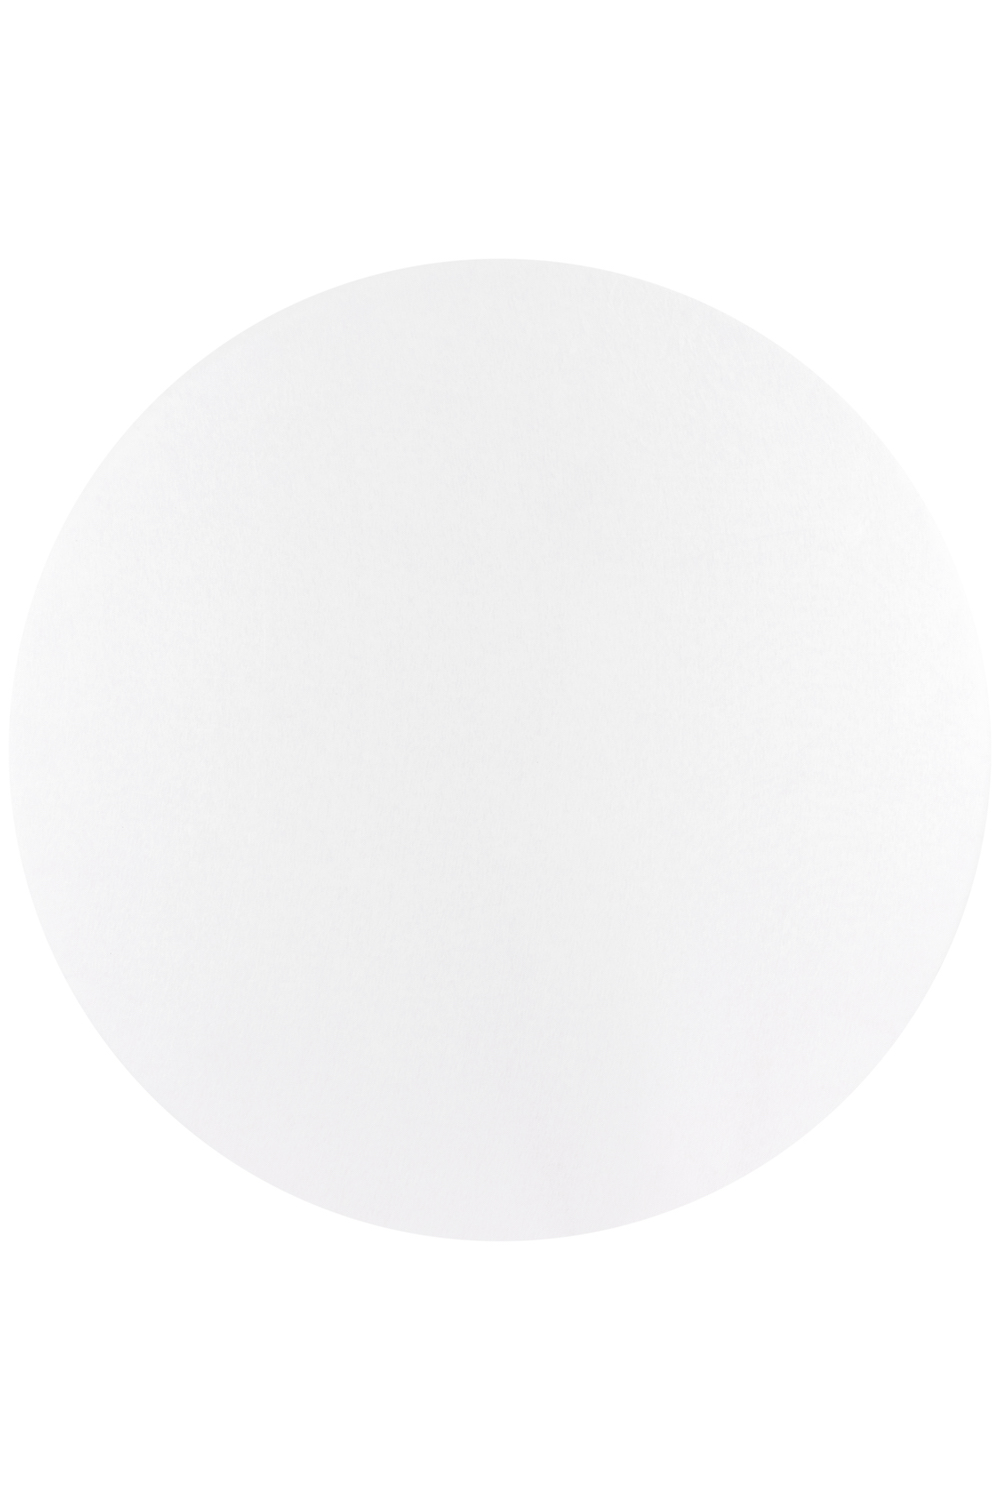 Jersey Fitted Sheet Playpen Mattress Round - White - 90/95cm